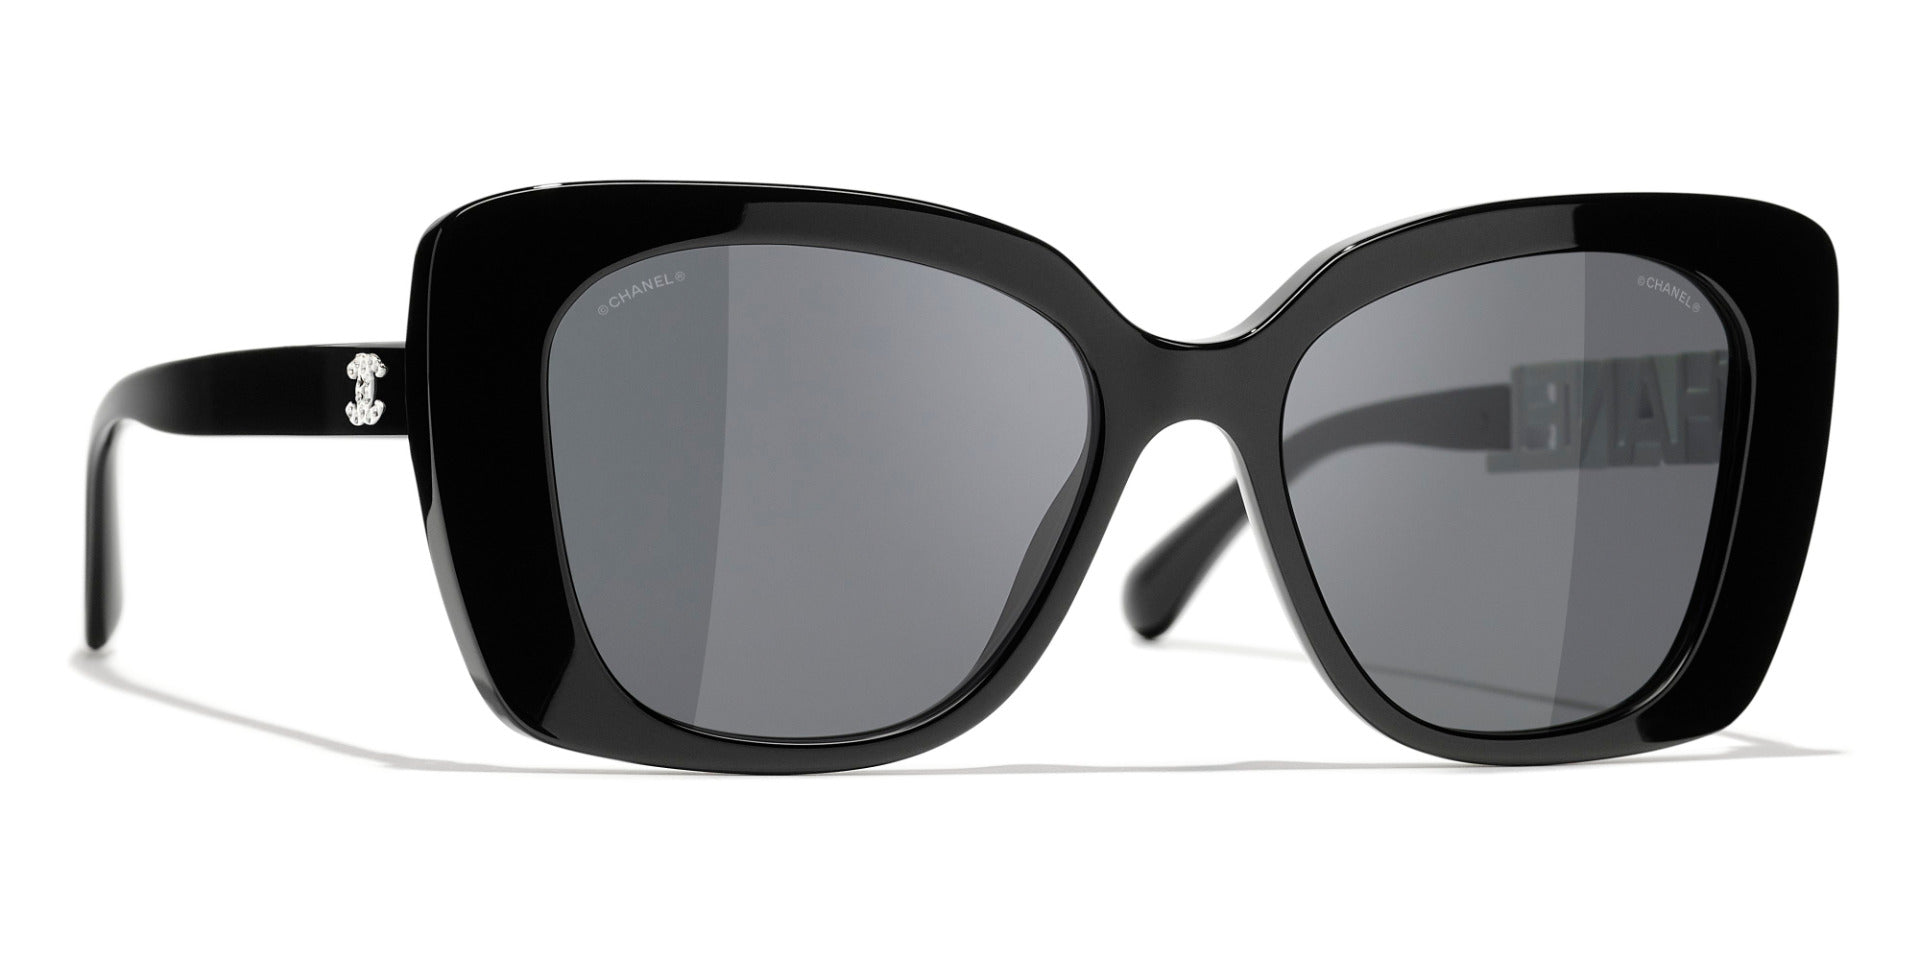 CHANEL 5422B Square Acetate u0026 Strass Sunglasses | Fashion Eyewear UK